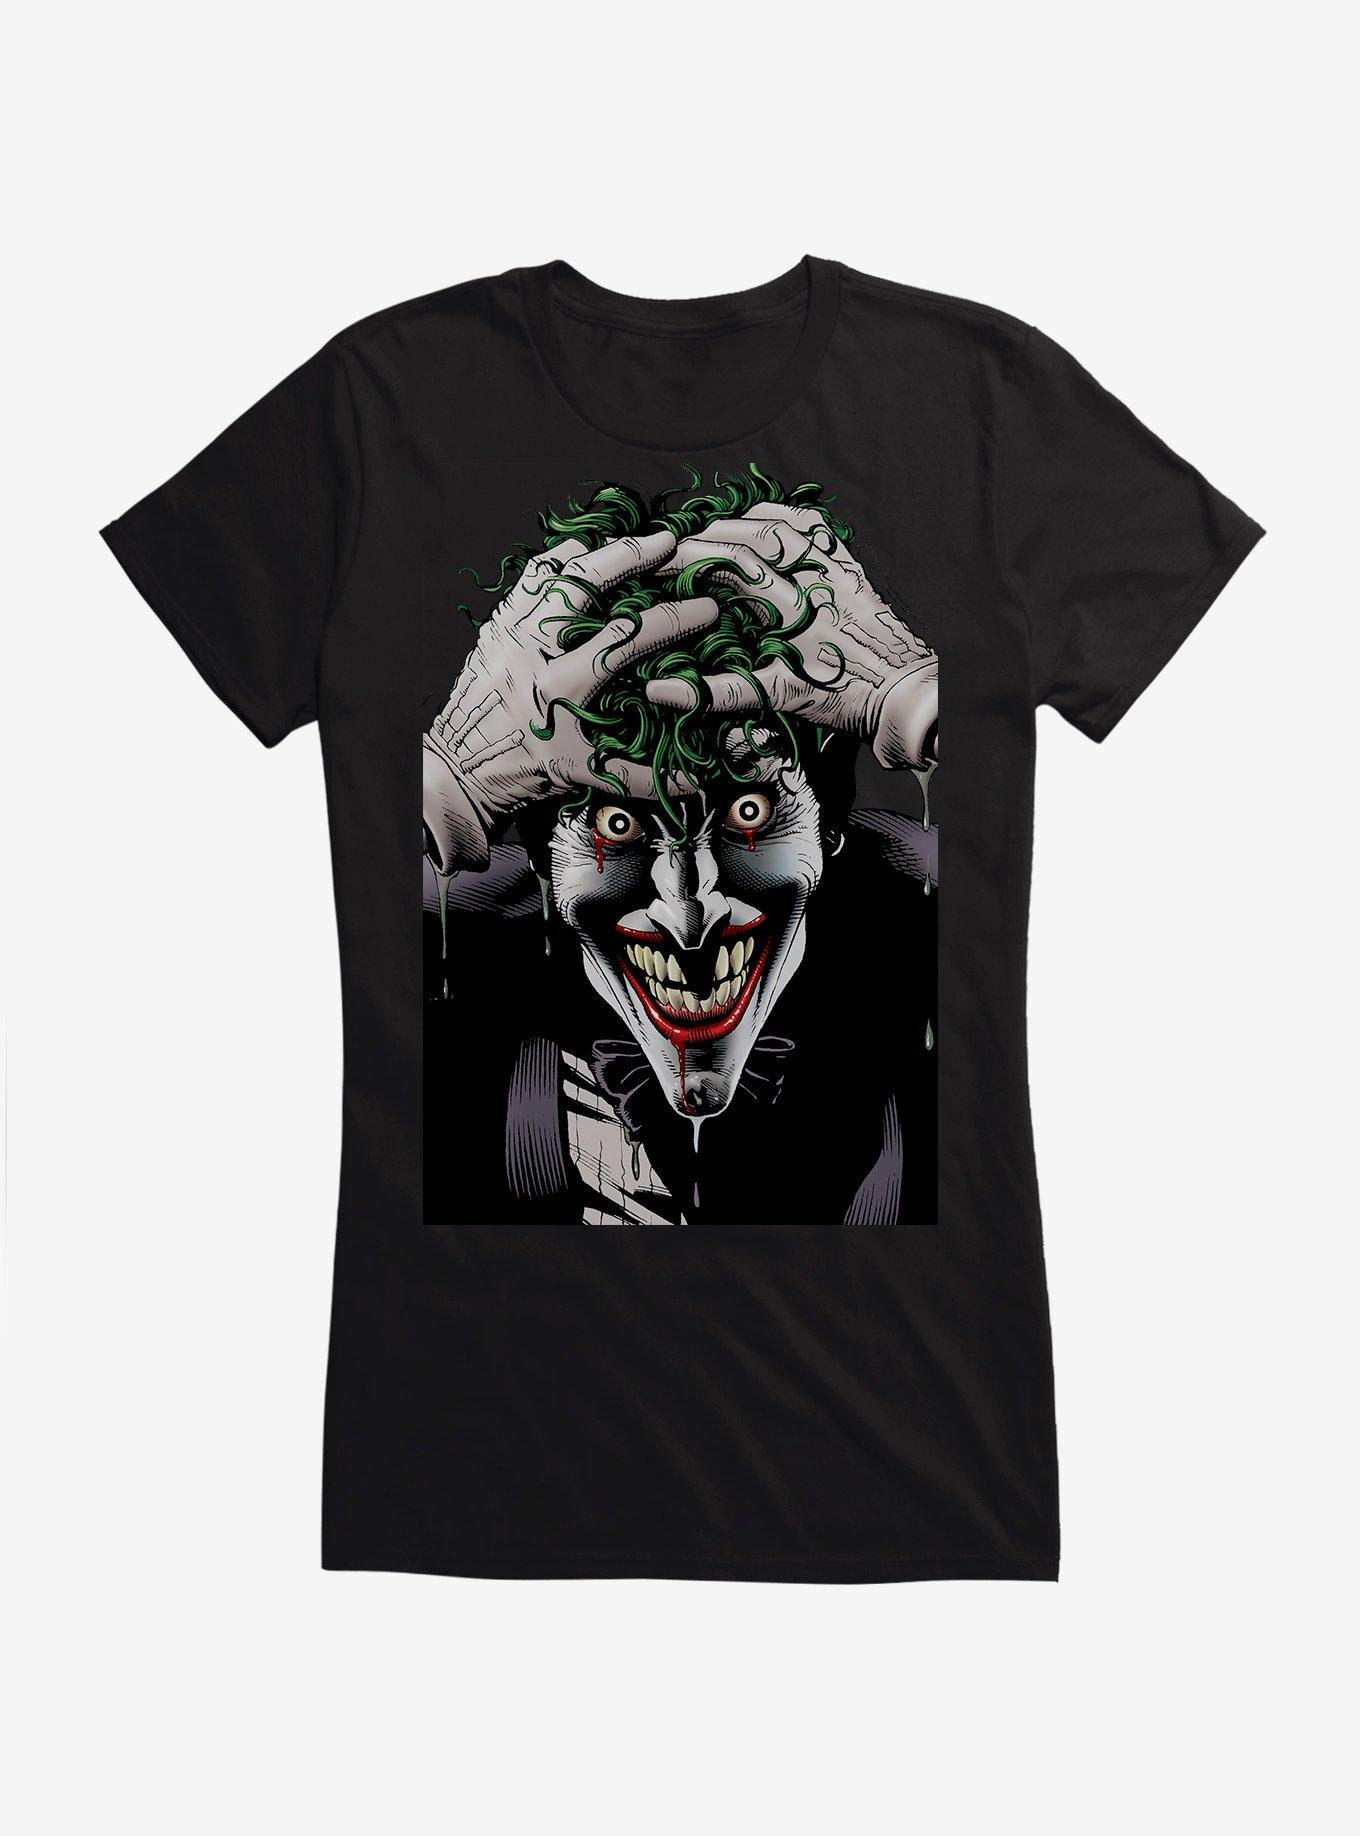 DC Comics Batman The Joker The Killing Joke Girls T-Shirt, BLACK, hi-res